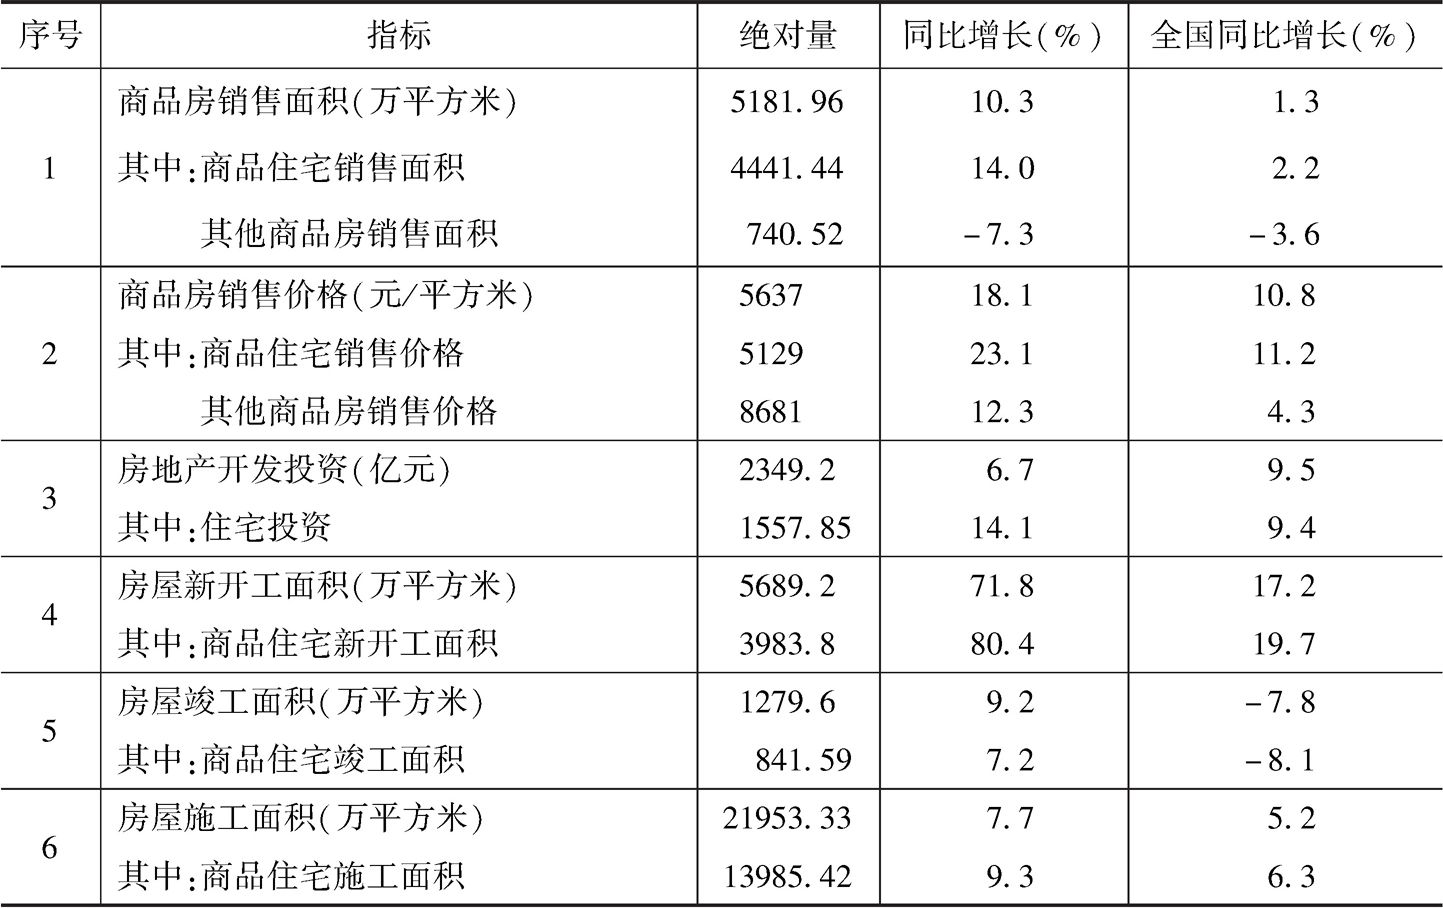 表1 2018年贵州房地产市场主要指标及与全国比较